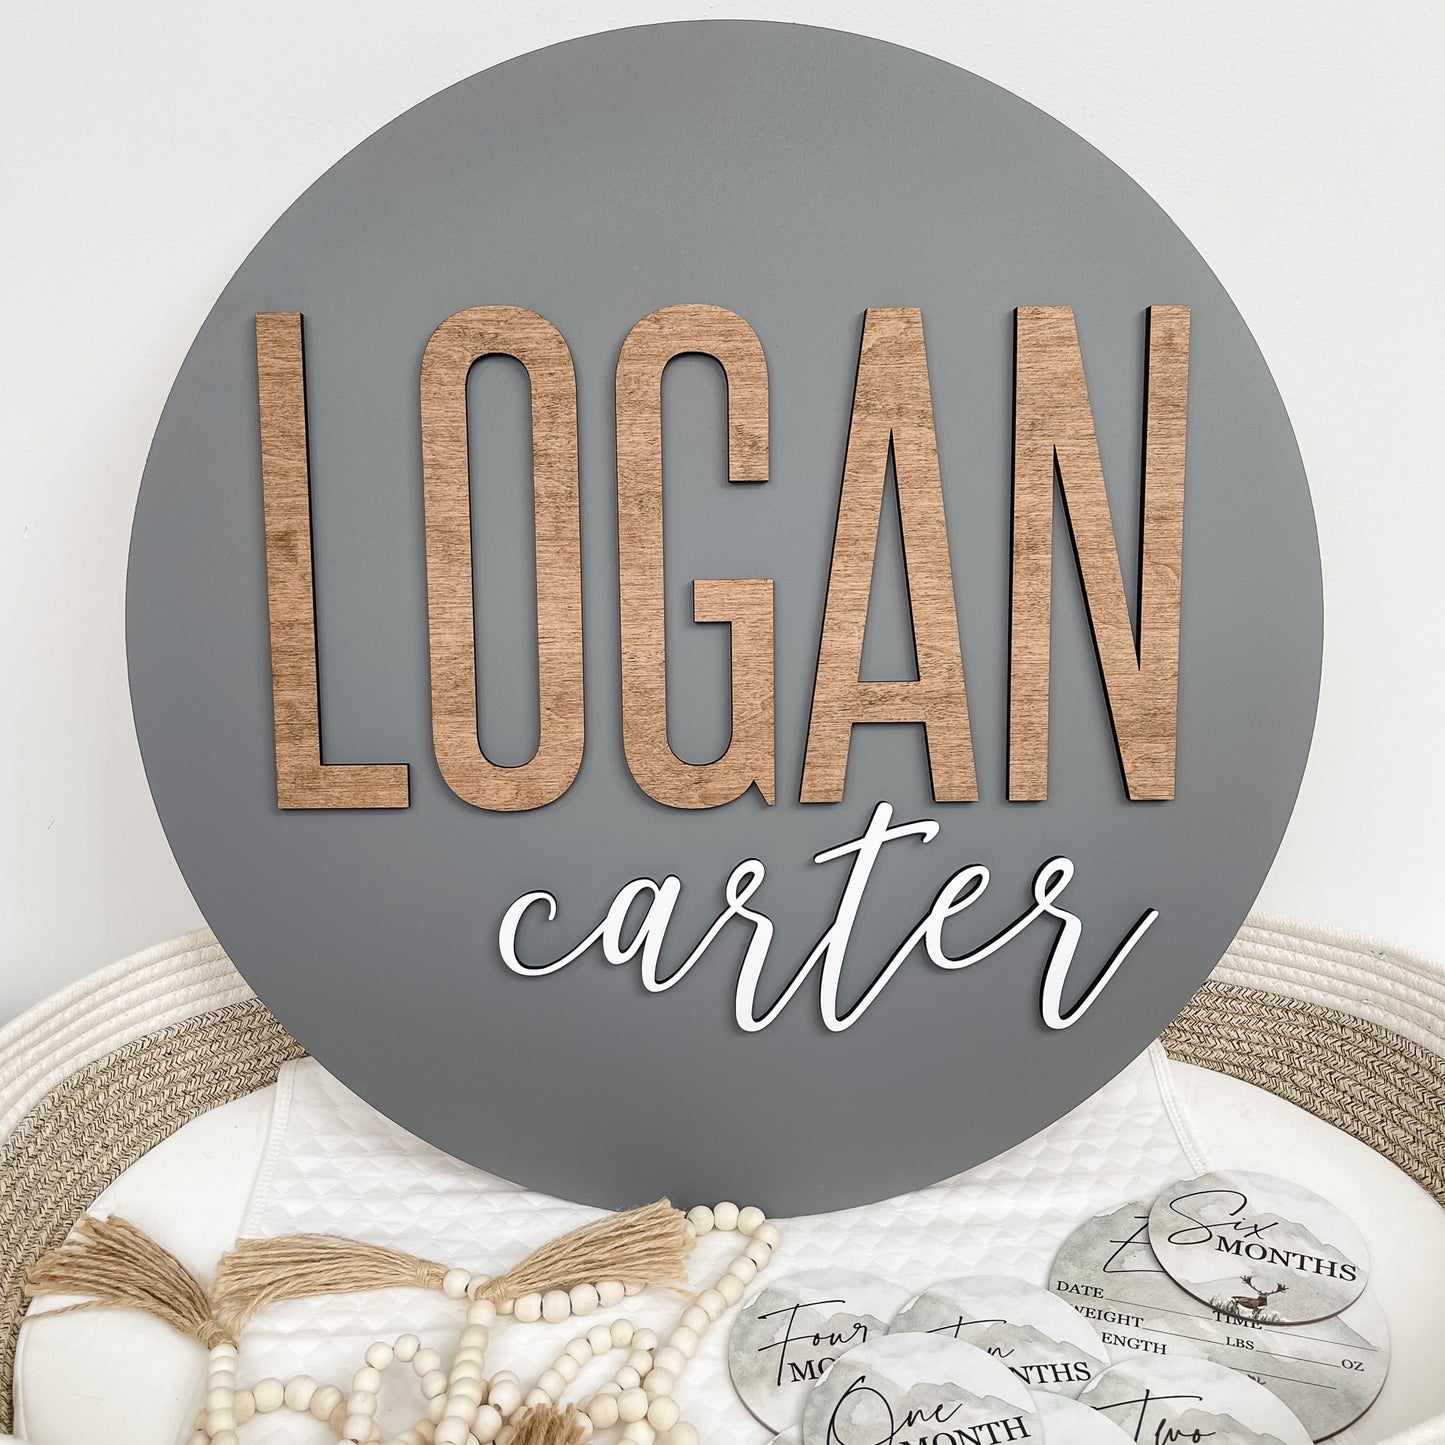 Logan Carter Round Name Sign